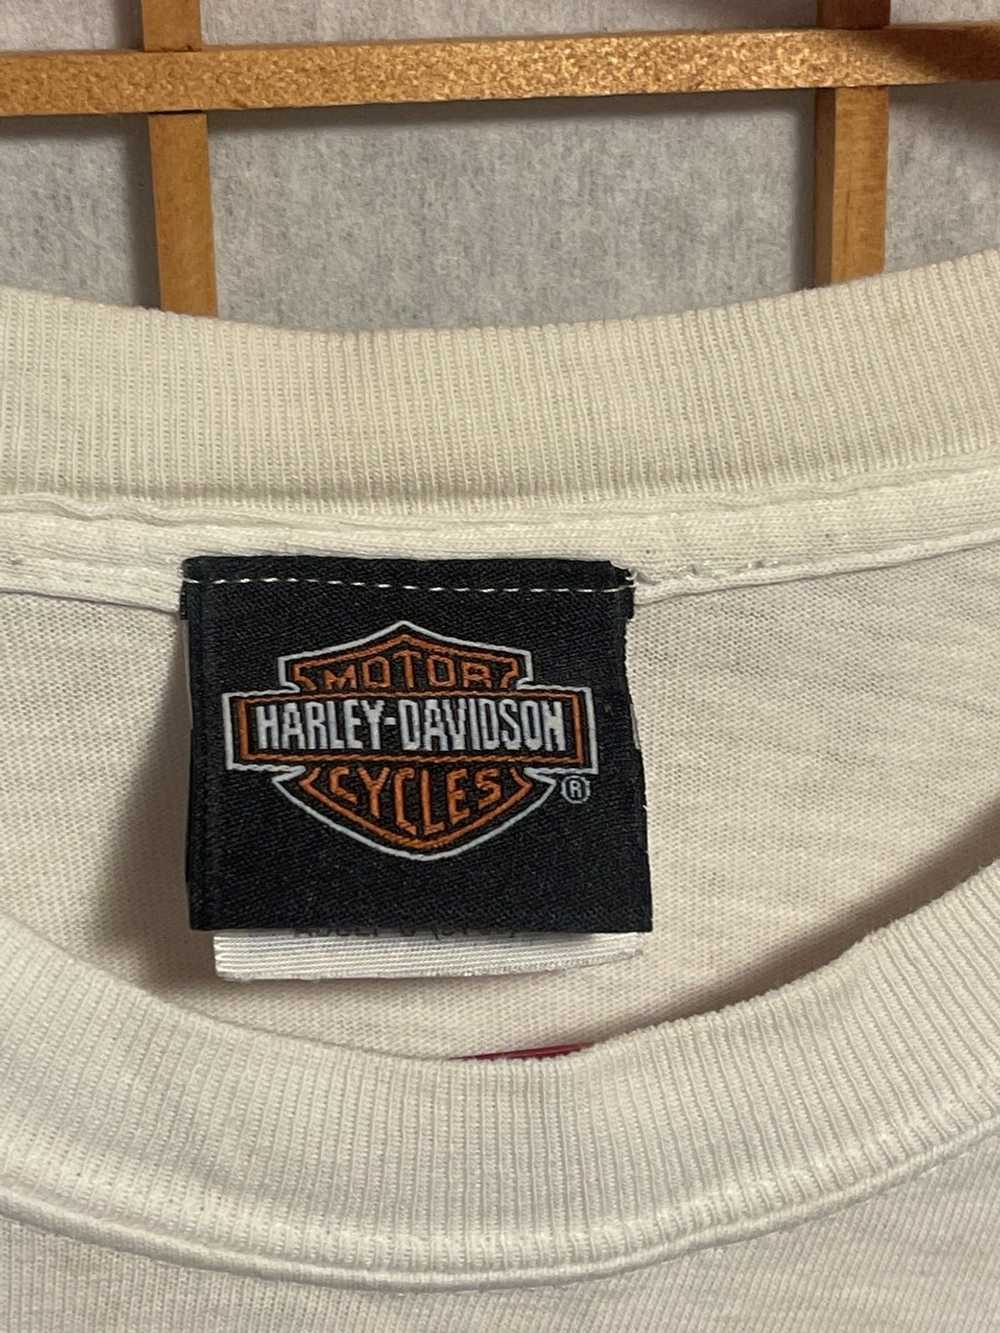 Harley Davidson Harley Davidson Bahamas t-shirt x… - image 4